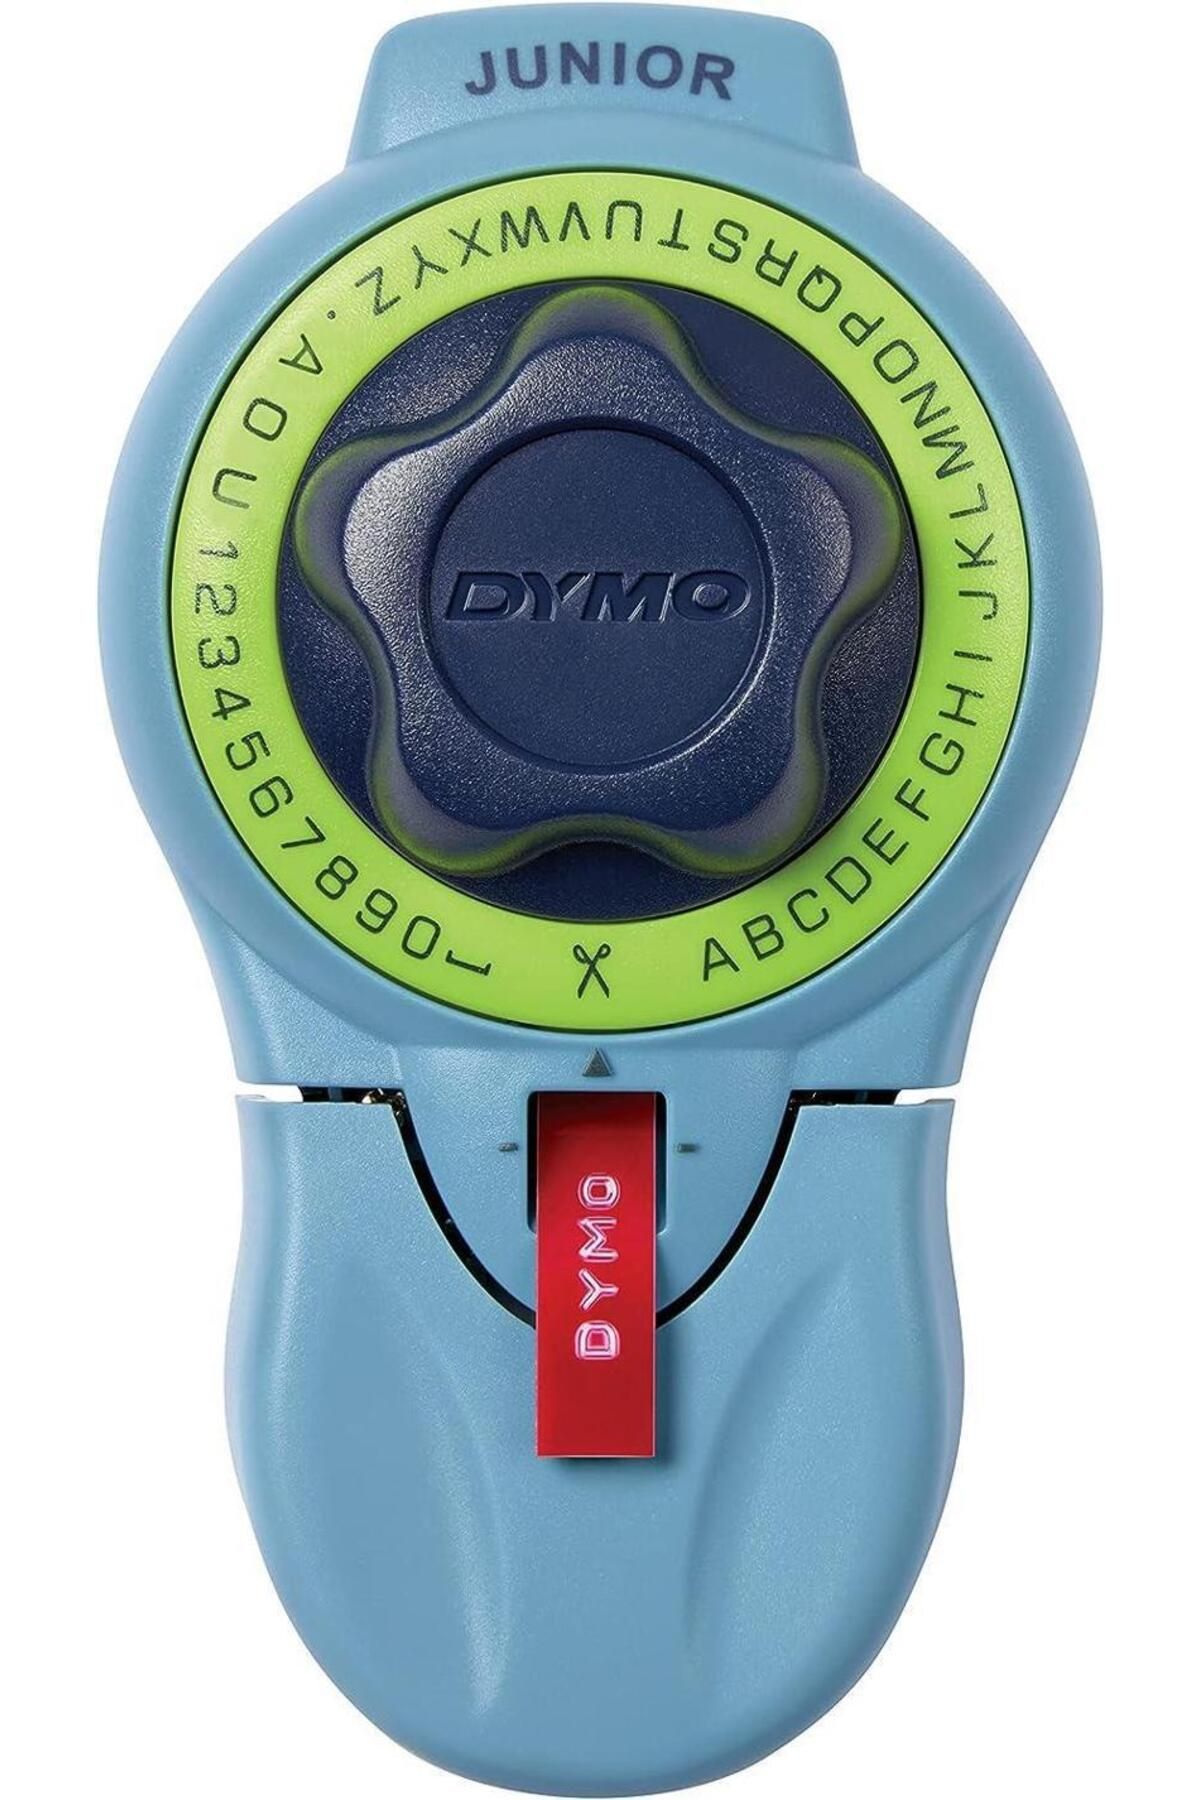 Dymo Junior Kişisel Mekanik Etiketleme Makinesi 9 mm Kabartma Şeritlerle Uyumlu Kullanım S0717900